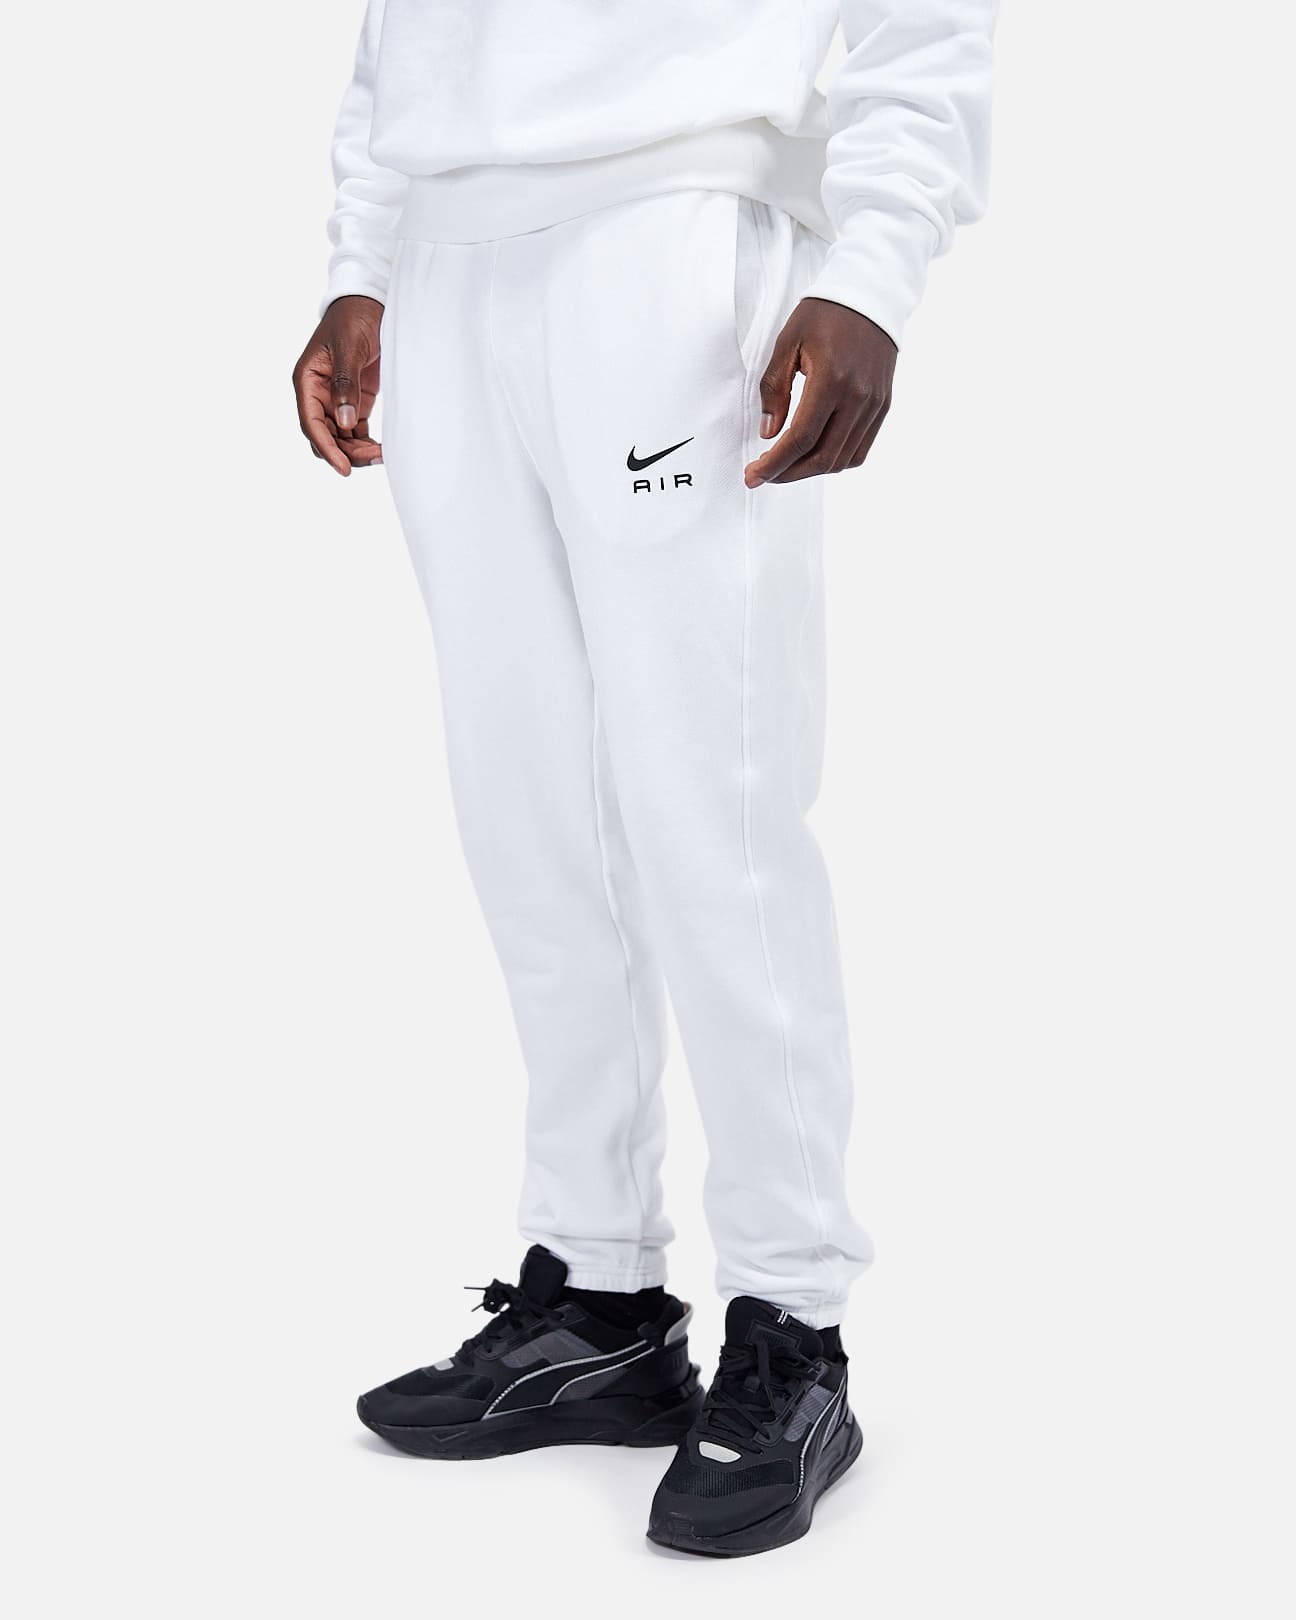 Pantalon Nike Air - Blanc/Noir